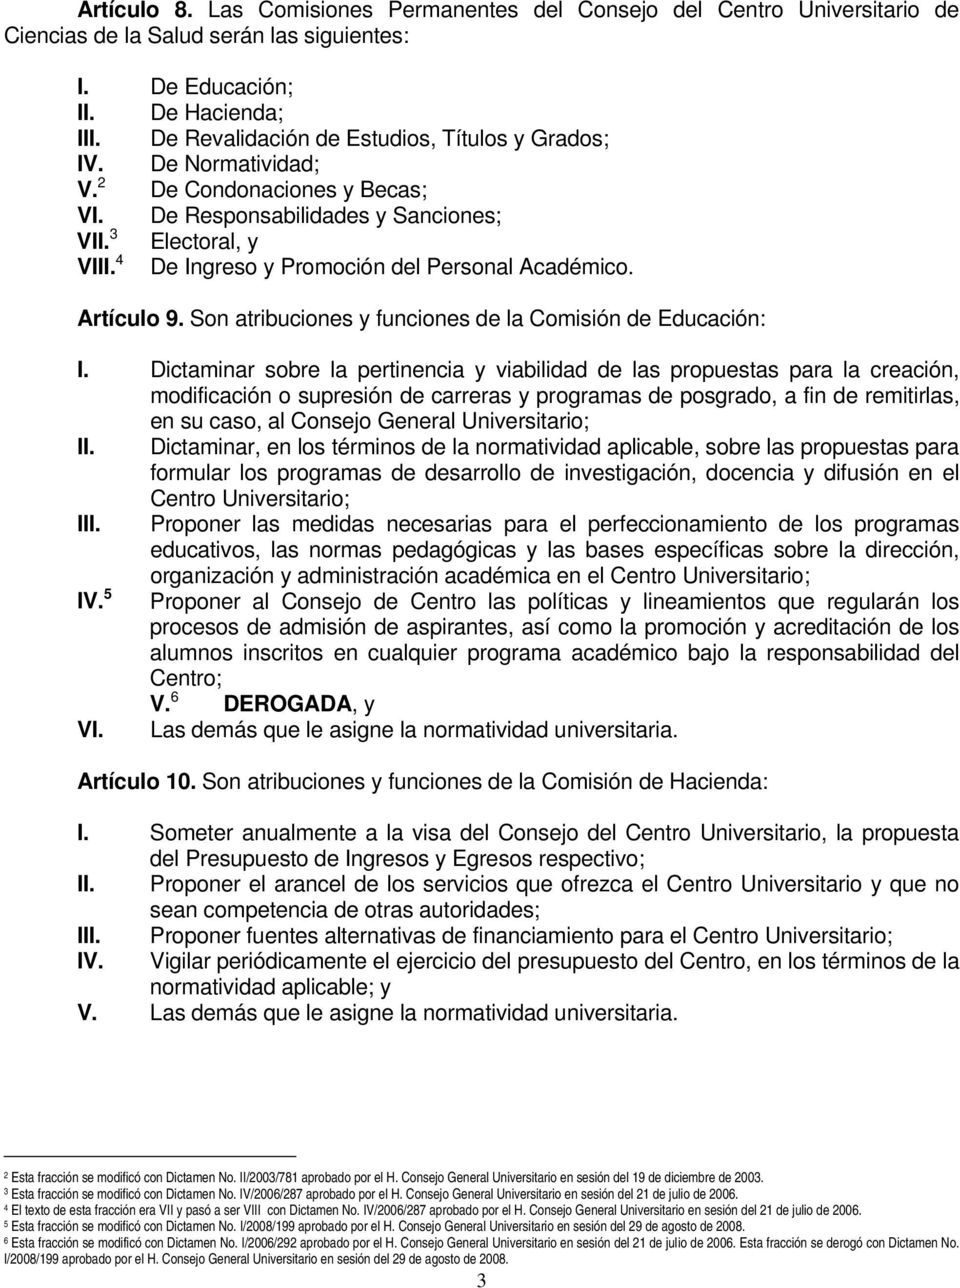 4 De Ingreso y Promoción del Personal Académico. Artículo 9. Son atribuciones y funciones de la Comisión de Educación: I.